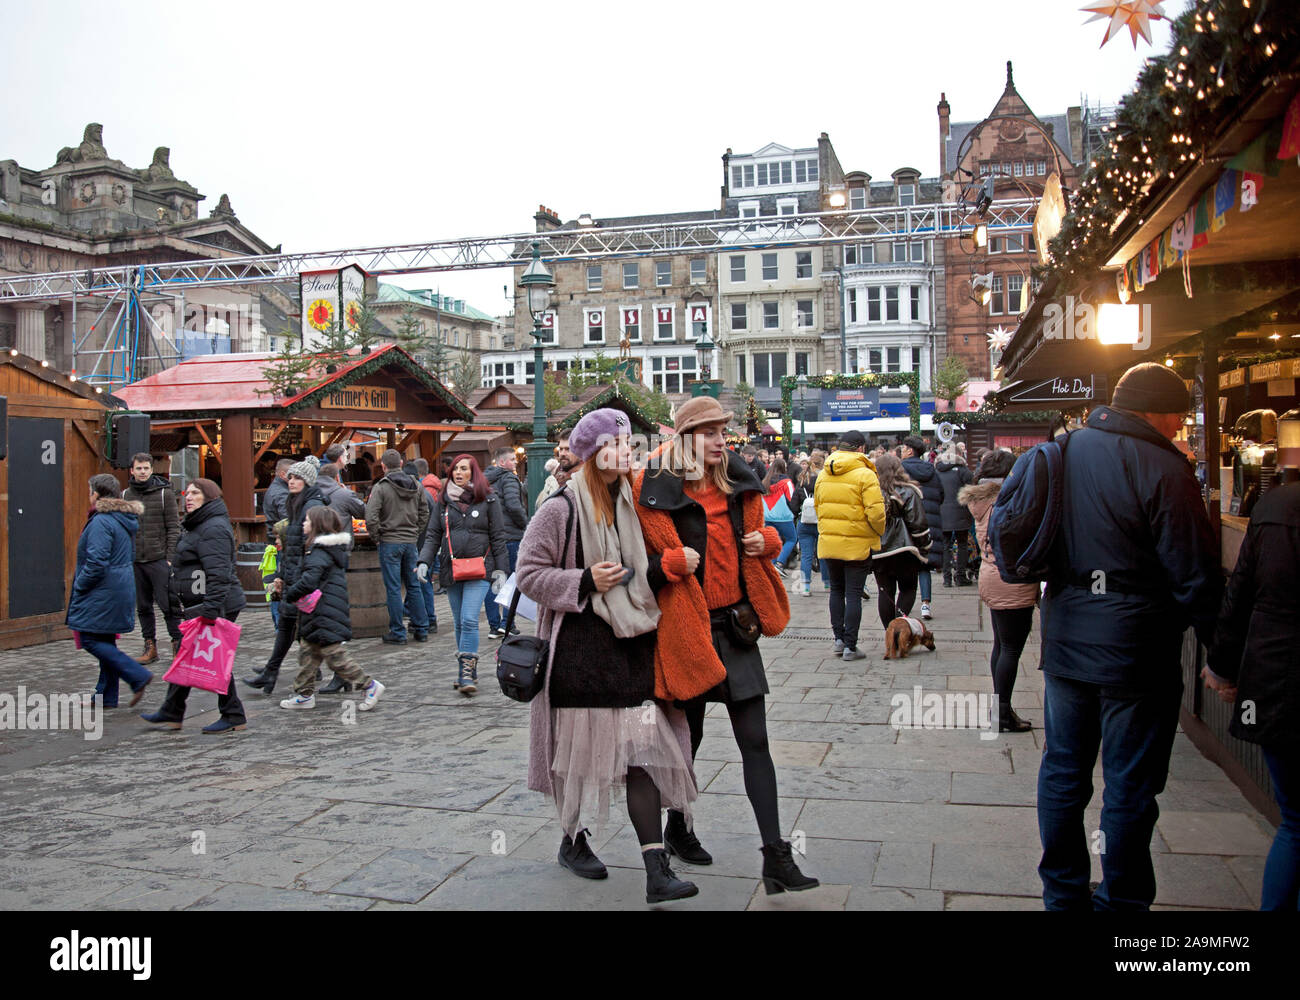 Die Princes Street Gardens, Edinburgh, Schottland, Vereinigtes Königreich. 16. November 2019. Weihnachtsmarkt und Kirmes öffnet zu spät. Menschen Mühle rund um die Stände auf der Suche nach Geschenke und Geschenke. Stockfoto